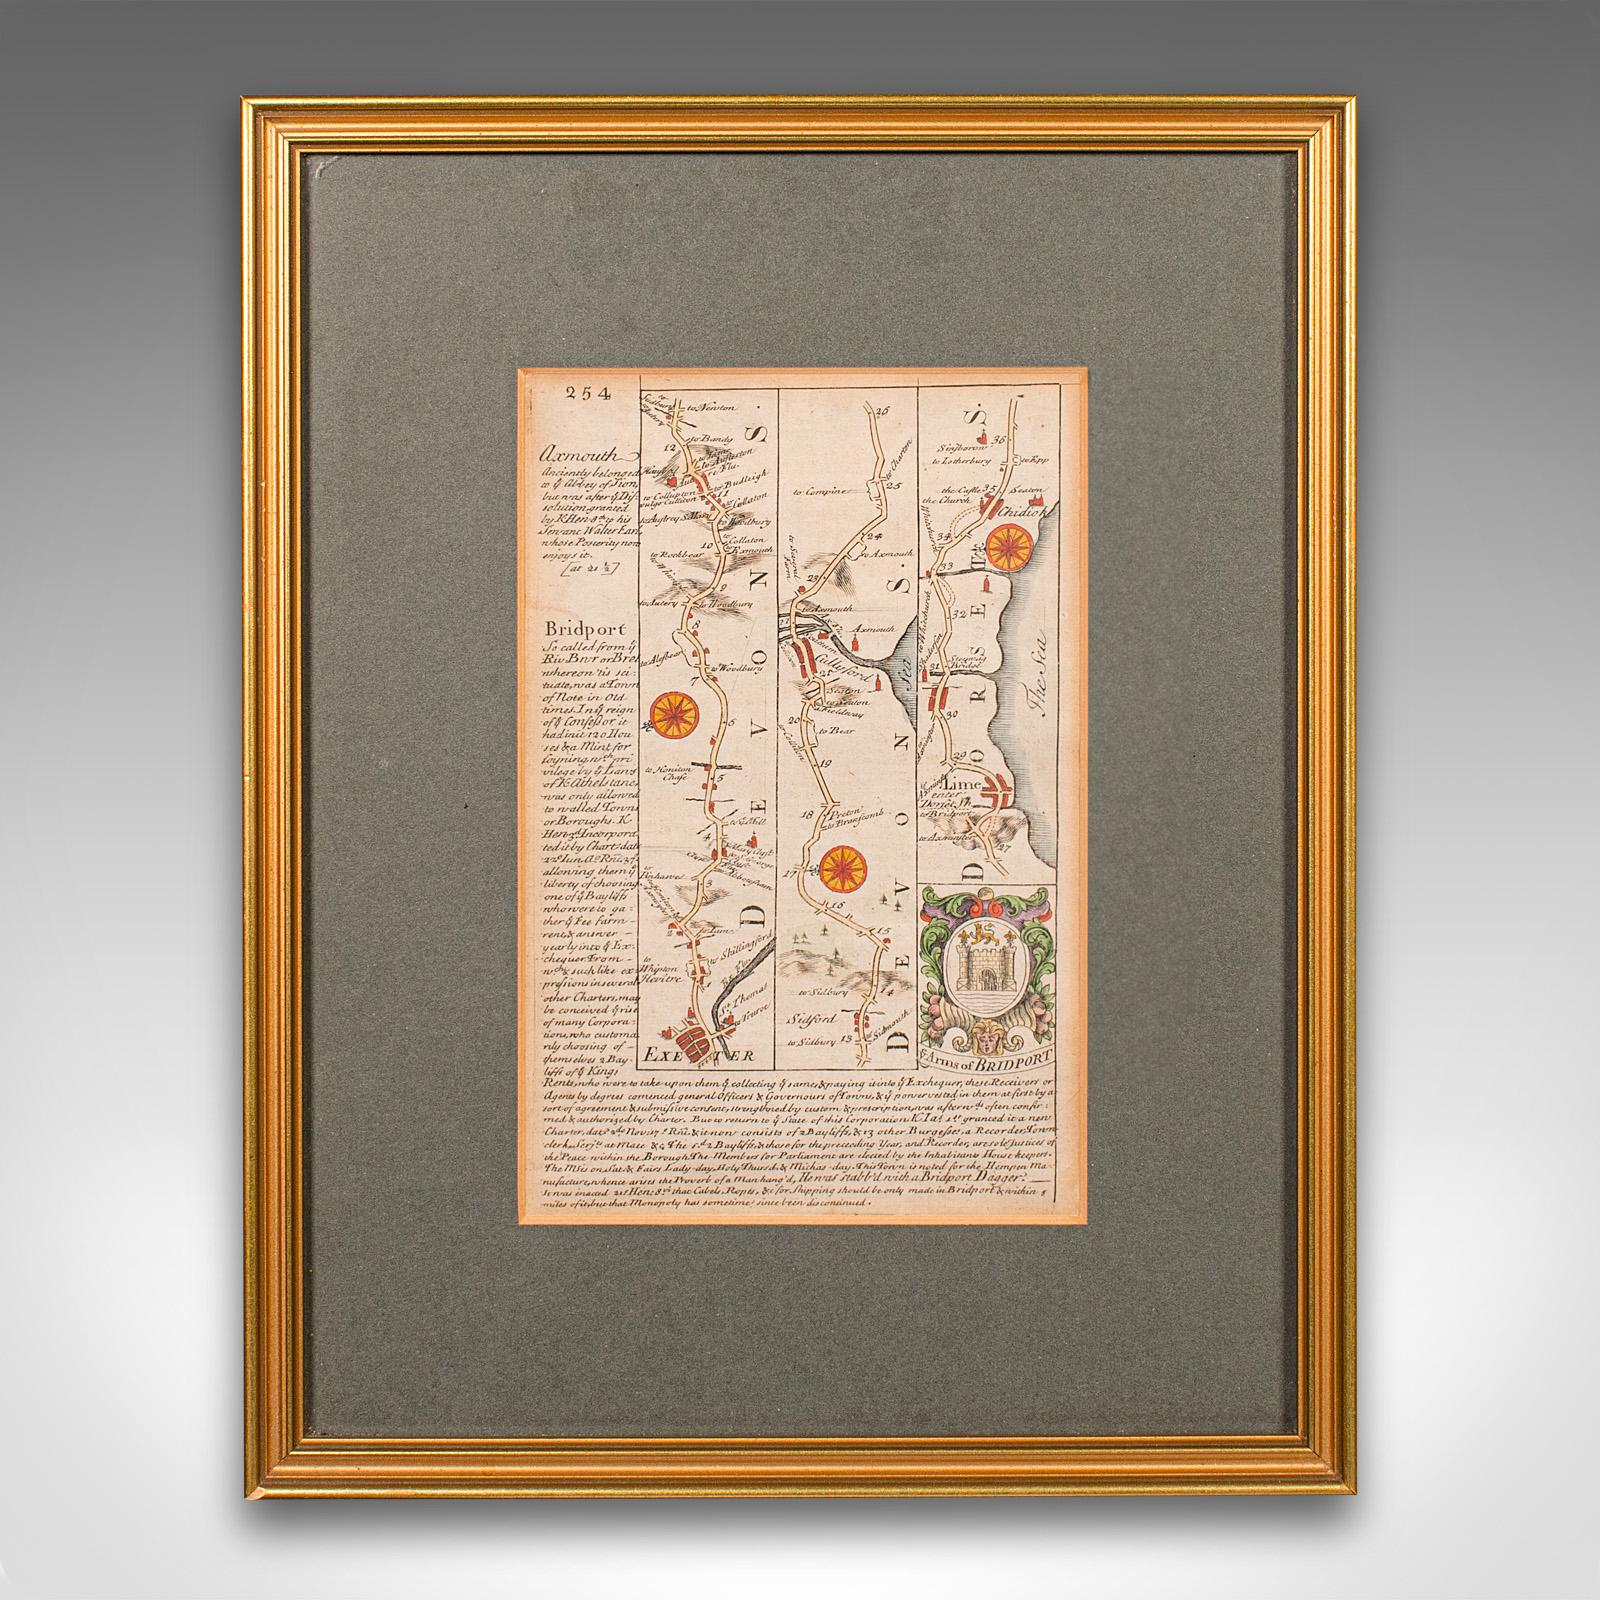 Il s'agit d'une ancienne carte routière de l'East Devon. Gravure lithographique anglaise encadrée d'intérêt régional, datant du début du XVIIIe siècle ou plus tard.

Fascinante cartographie routière du 18e siècle d'Exeter à Bridport
Présente une